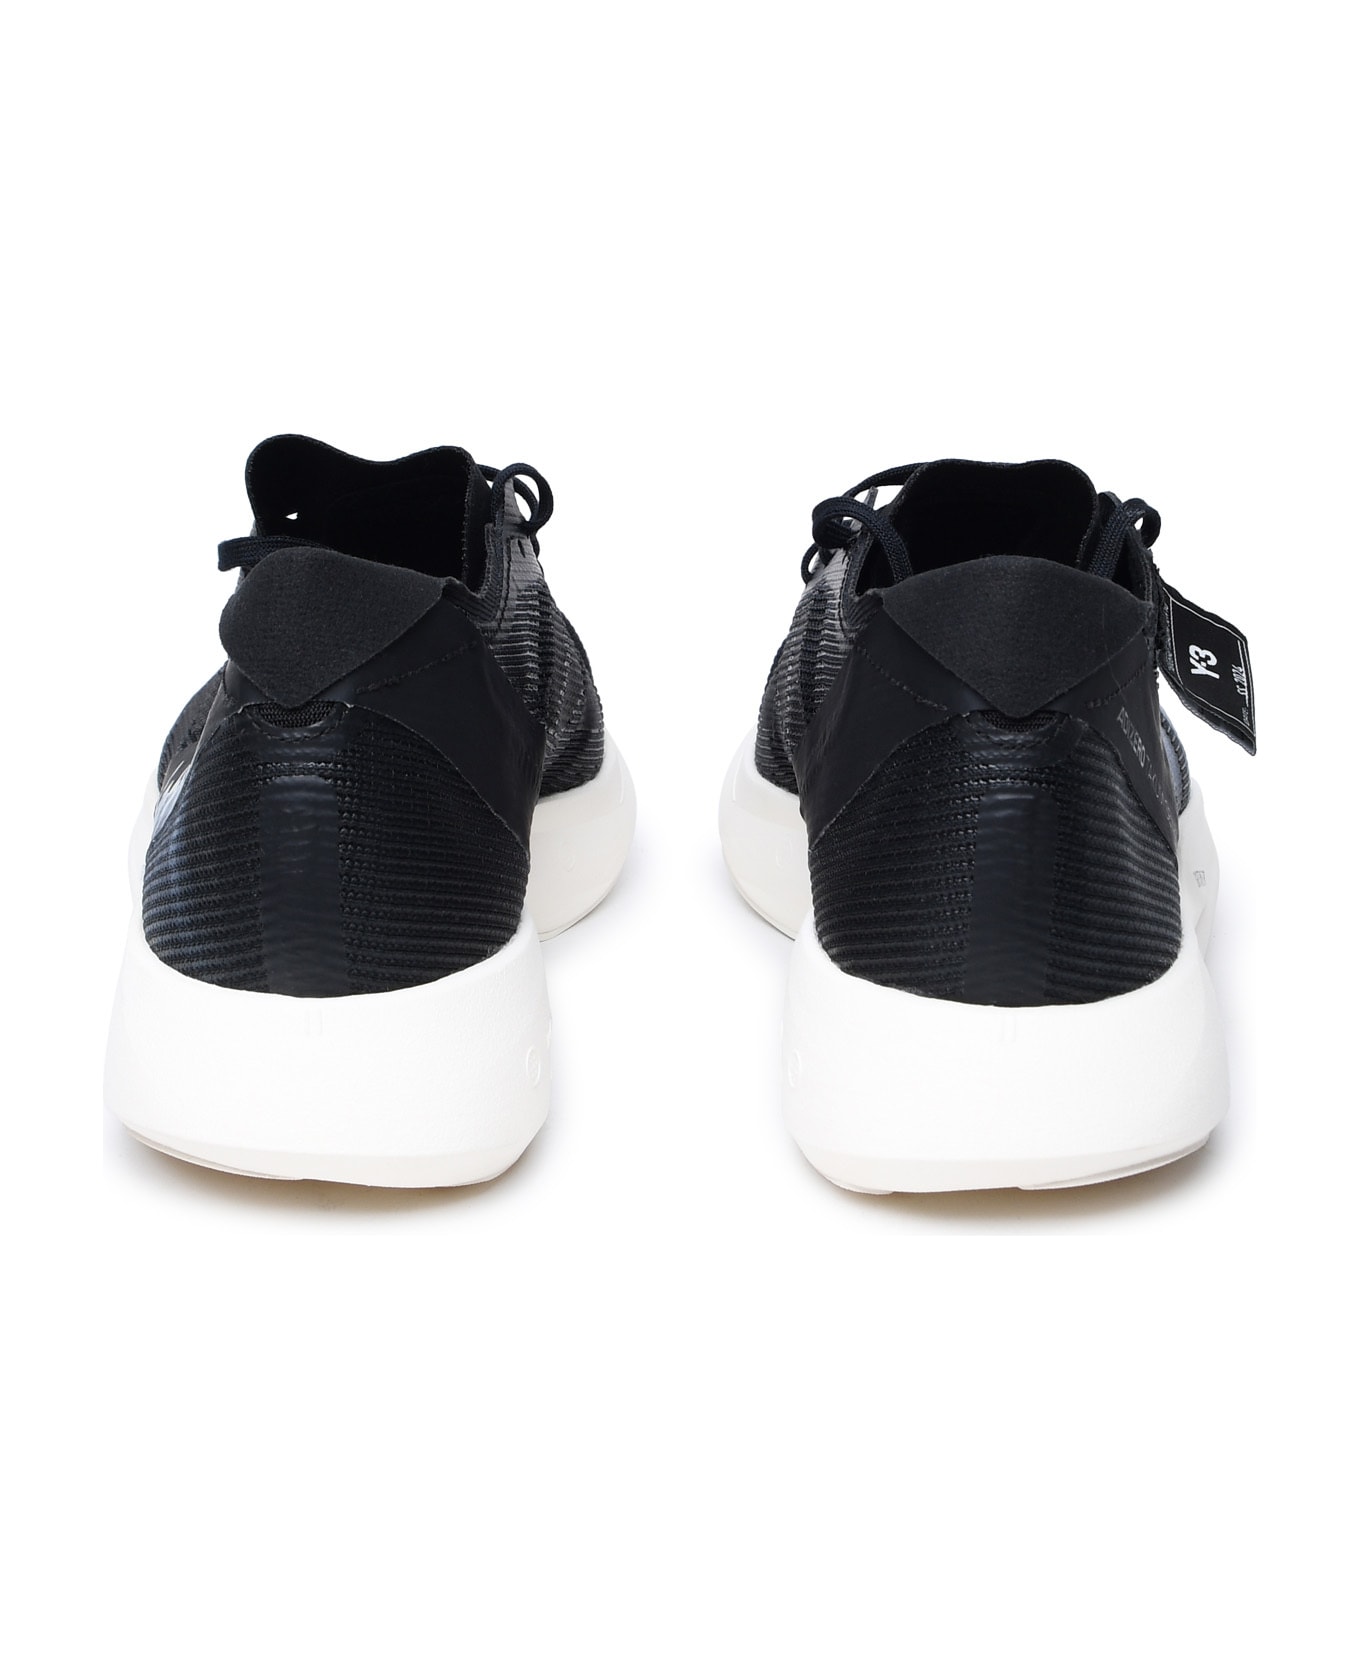 Y-3 Black Fabric Sneakers - Black